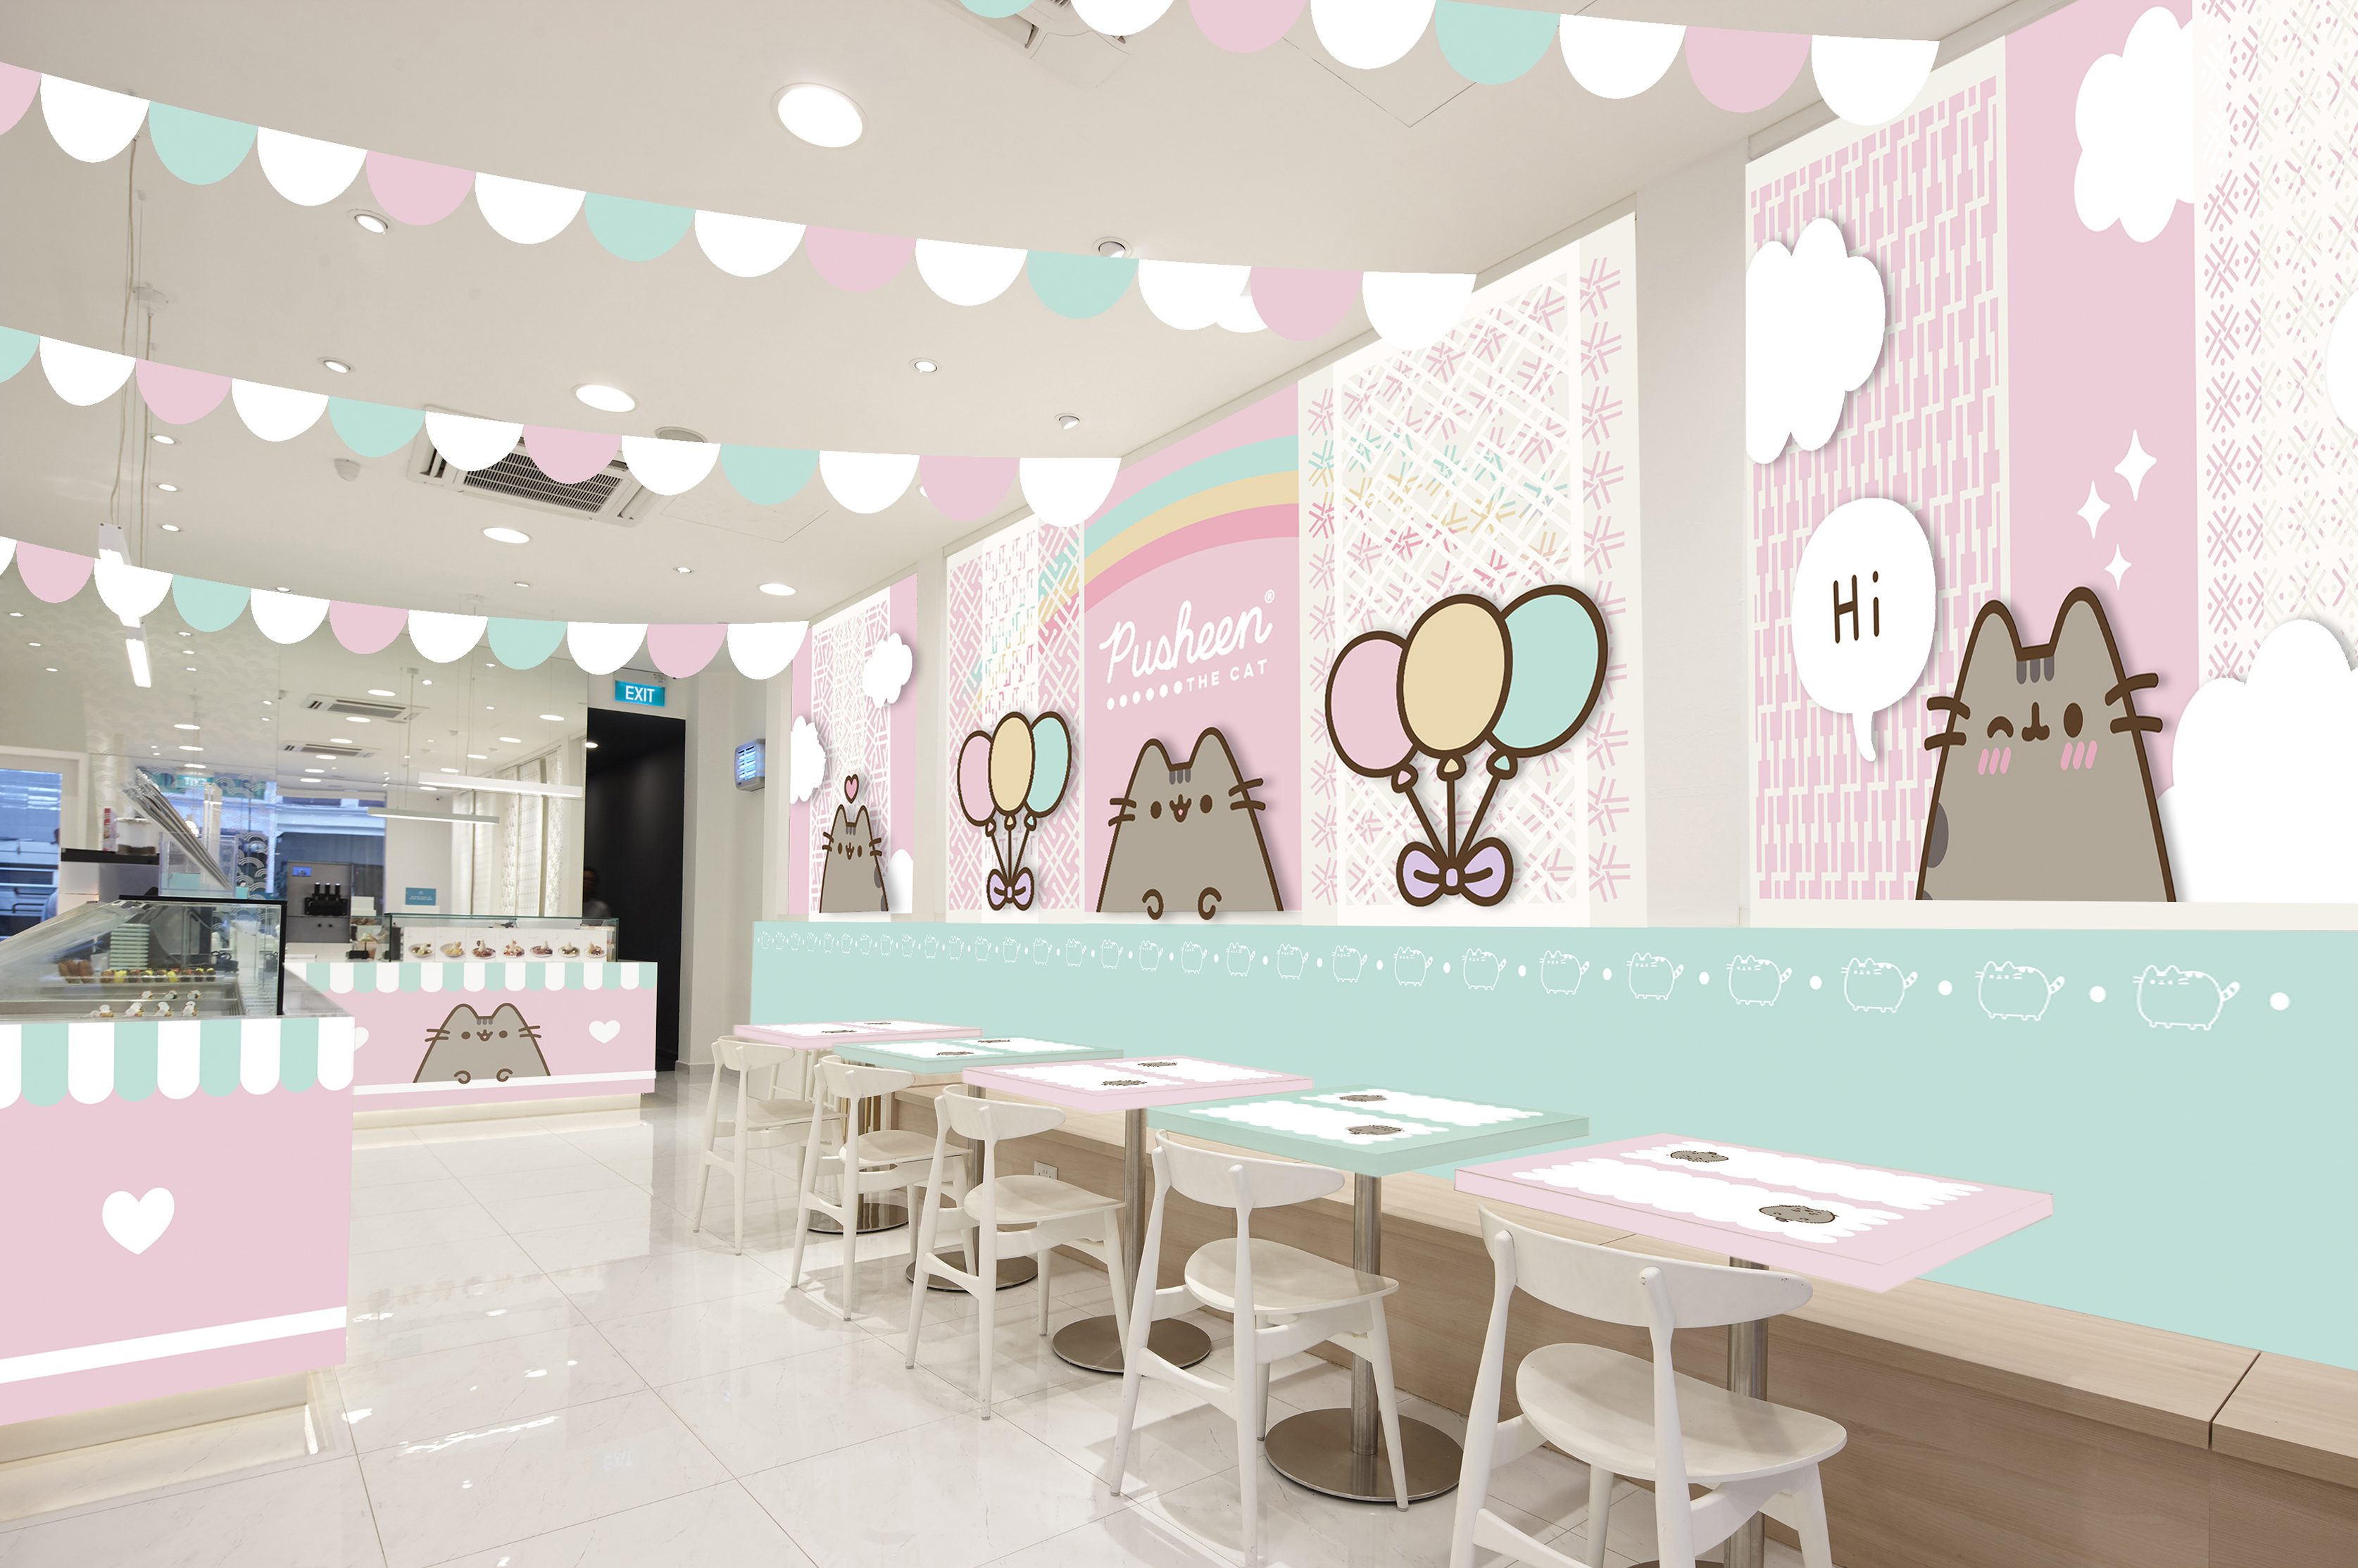 Pusheen Cafe Singapore - HD Wallpaper 